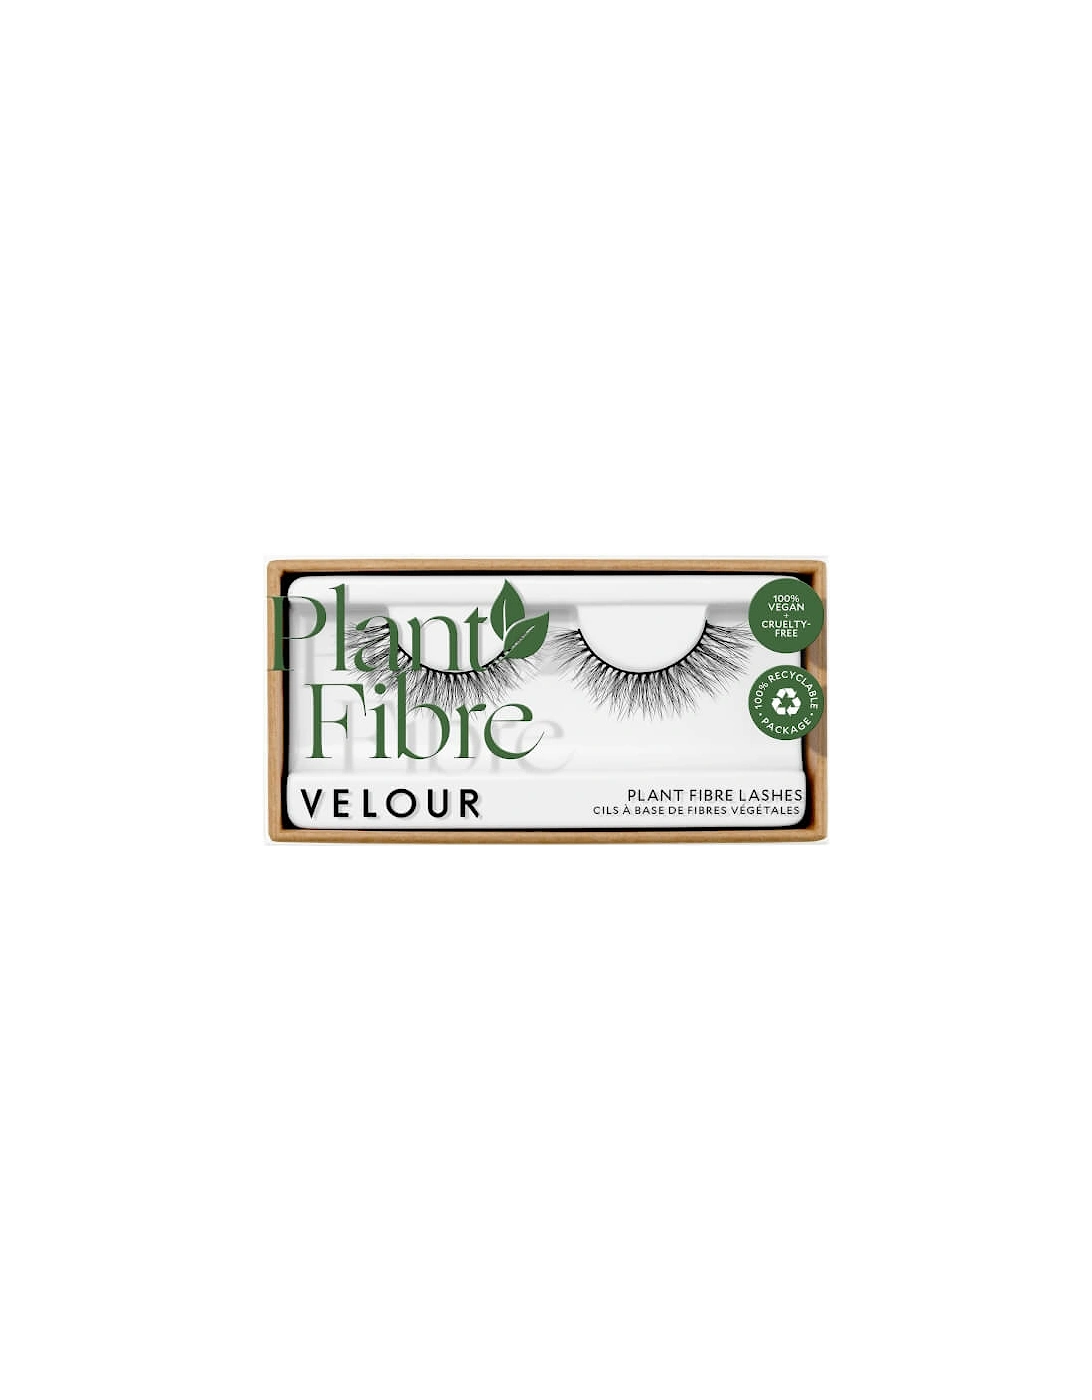 Velour Plant Fibre Cloud Nine Lashes, 2 of 1